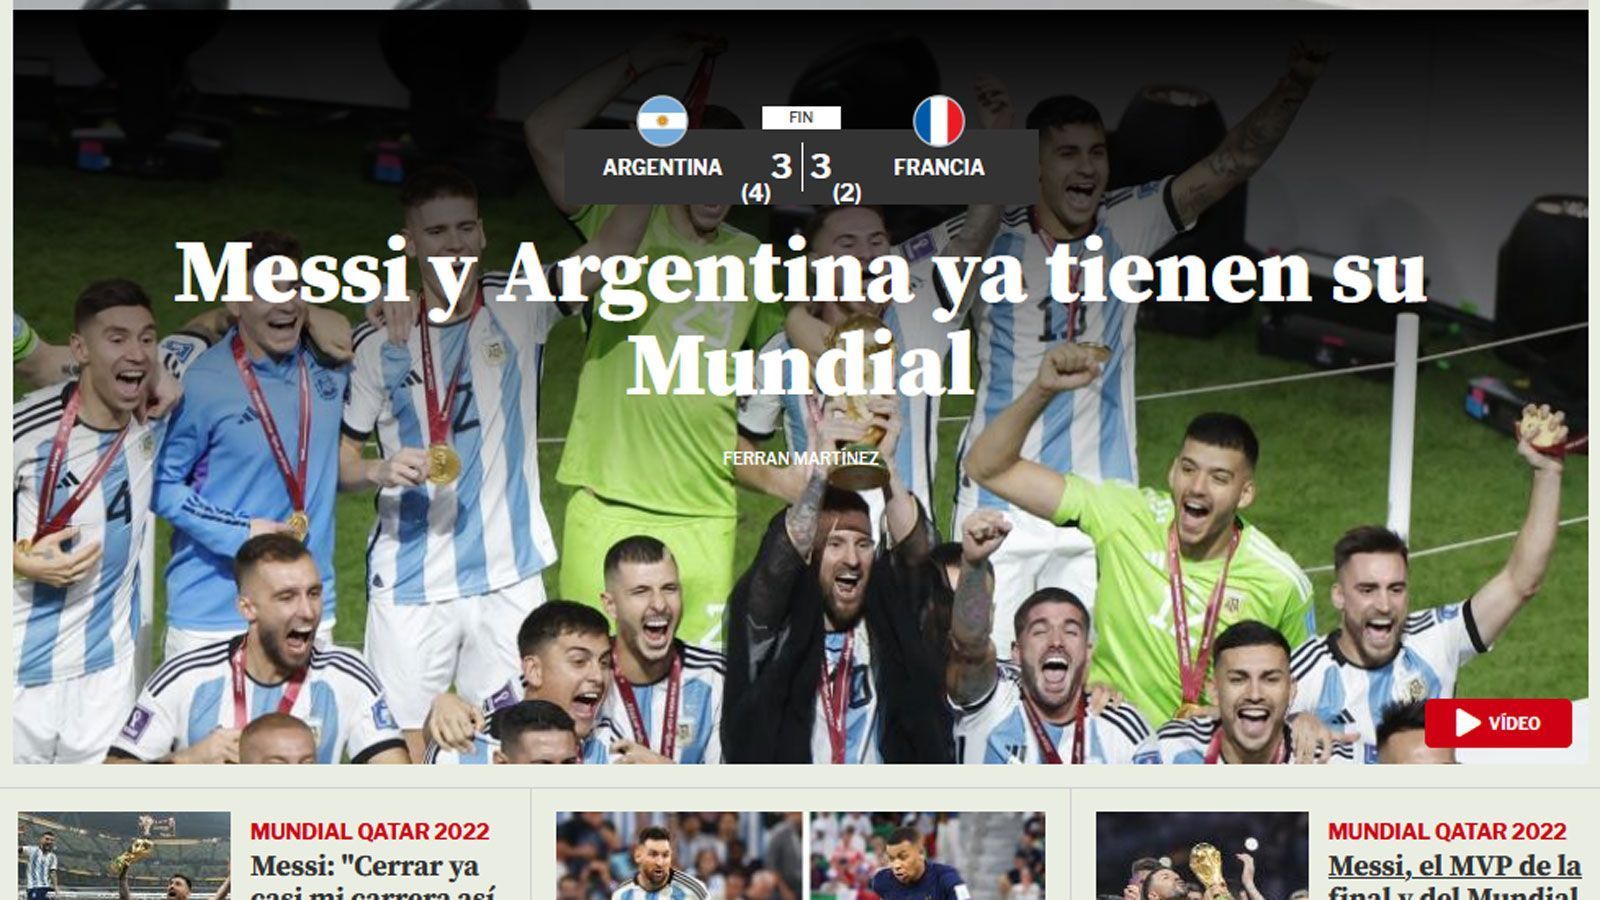 
                <strong>Mundo Deportivo (Spanien)</strong><br>
                "Messi und Argentinien haben ihren WM-Titel. In einem historischen Finale holt sich Argentinien nach einem Sieg im Elfmeterschießen gegen eine großartige französische Mannschaft den dritten Stern. Leo war mit zwei Toren gegen einen kämpferischen Mbappe, der einen Hattrick erzielte, entscheidend für den Erfolg."
              